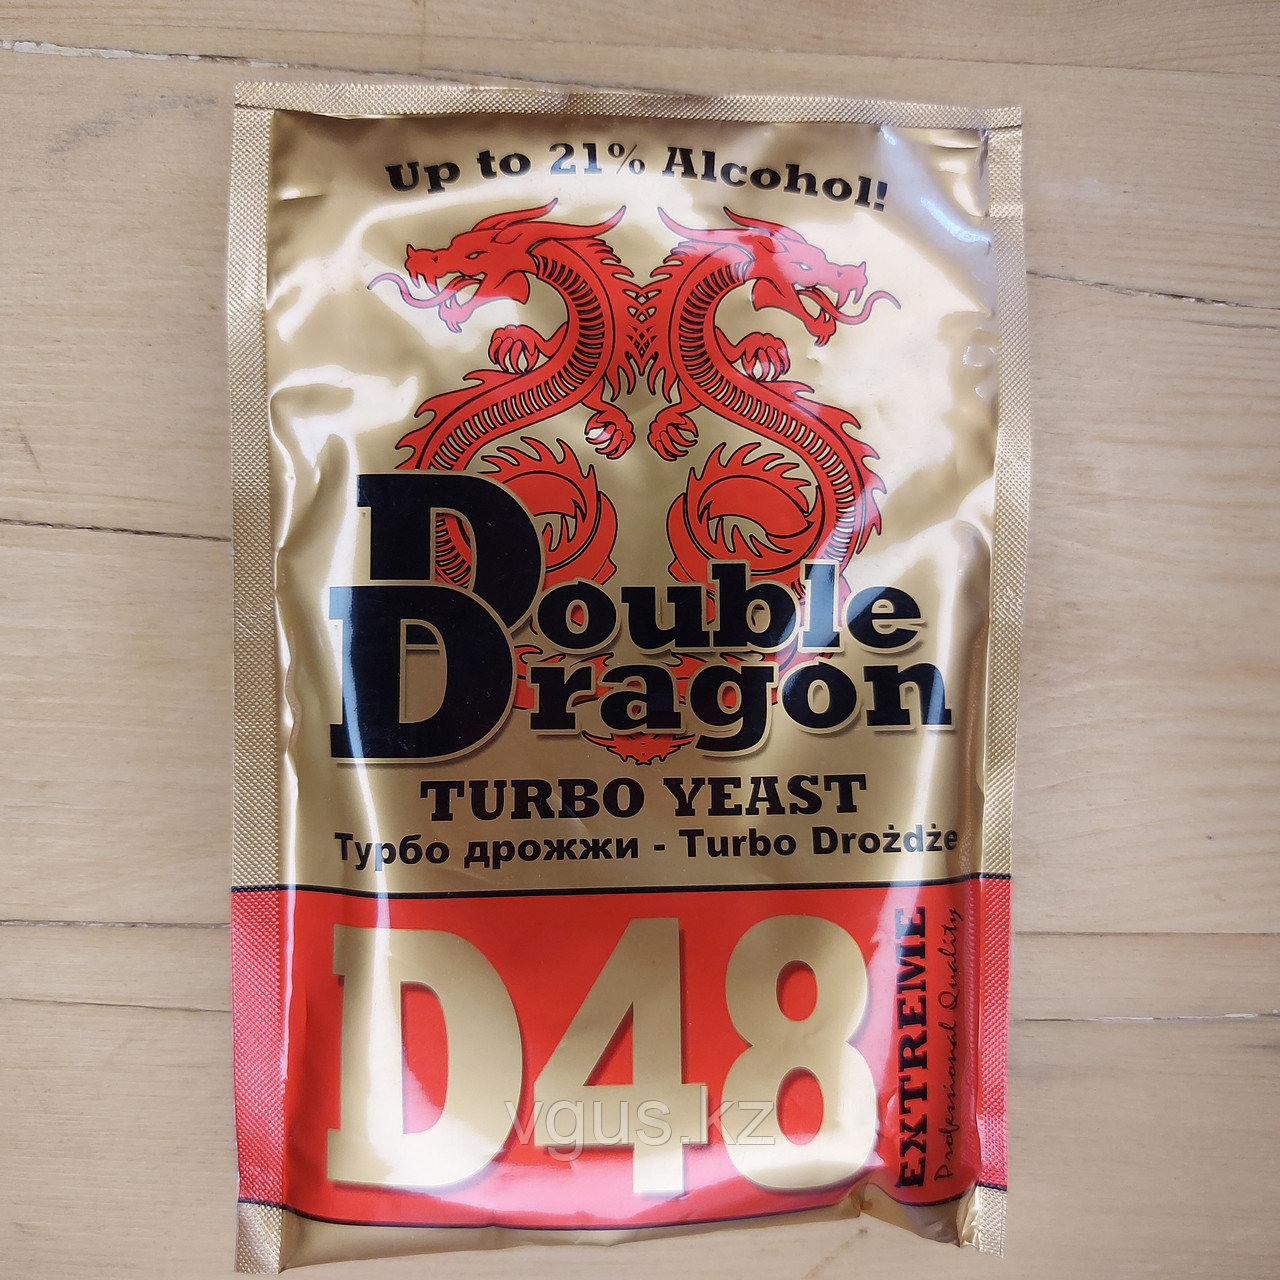 Дрожжи Double Dragon D48 Turbo yeast 130гр.